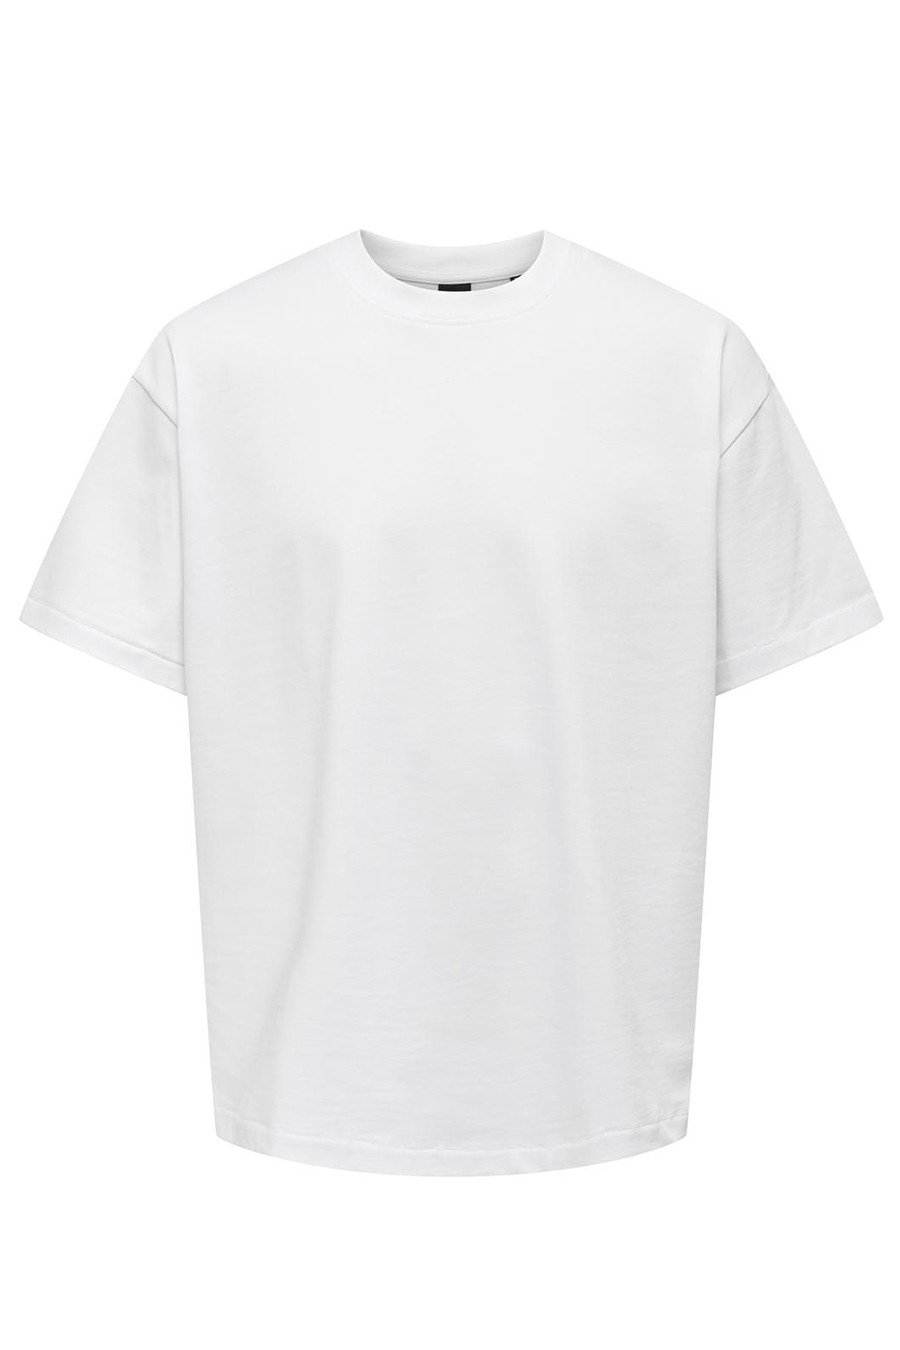 Marškinėliai ONLY & SONS 22027787-Bright-White